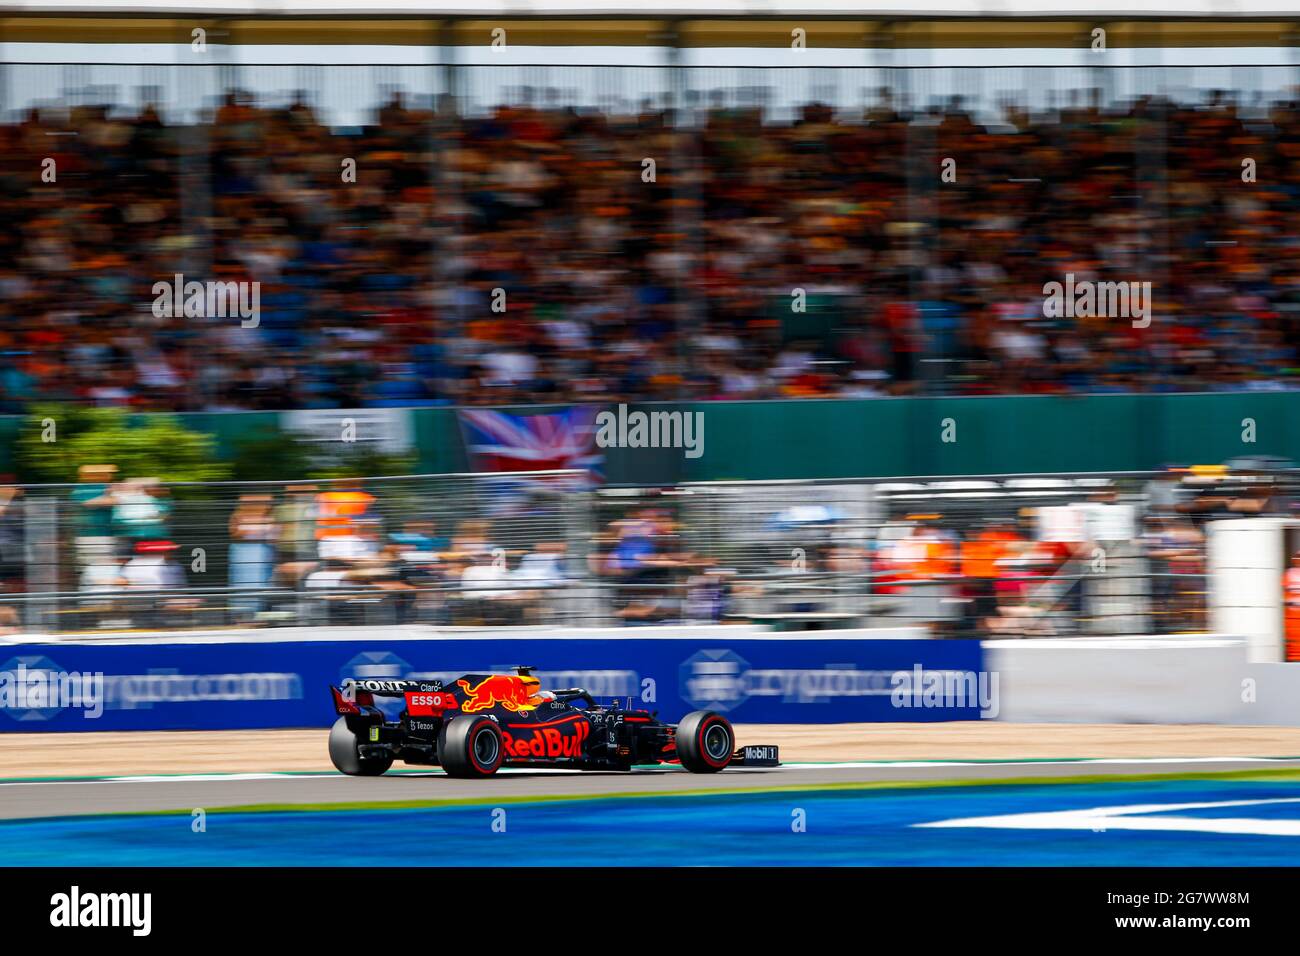 33 VERSTAPPEN Max (nld), Red Bull Racing Honda RB16B, acción durante la  Fórmula 1 Pirelli Gran Premio Británico 2021, 10th ronda del Campeonato  Mundial de Fórmula Uno FIA 2021 del 16 al